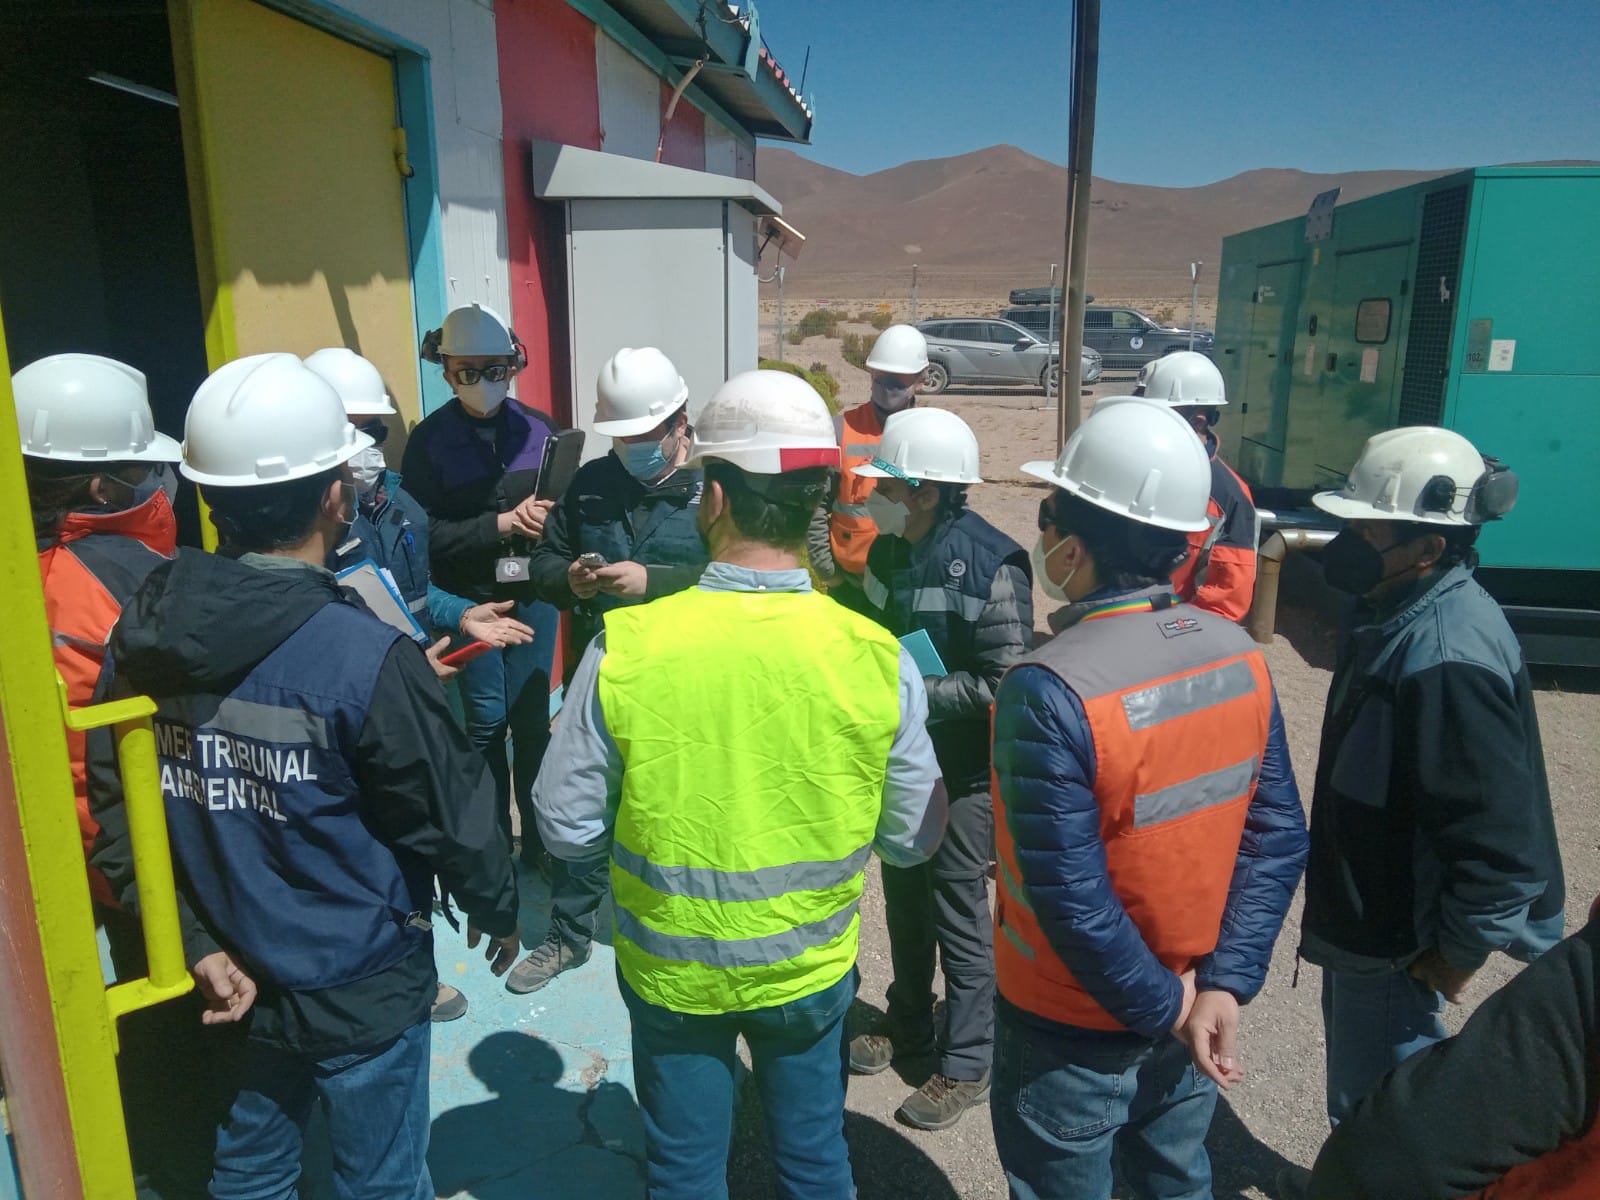  Primer Tribunal Ambiental viaja hasta la Compañía Minera Cerro Colorado (comuna de Pozo Almonte) para verificar cumplimiento de medida cautelar